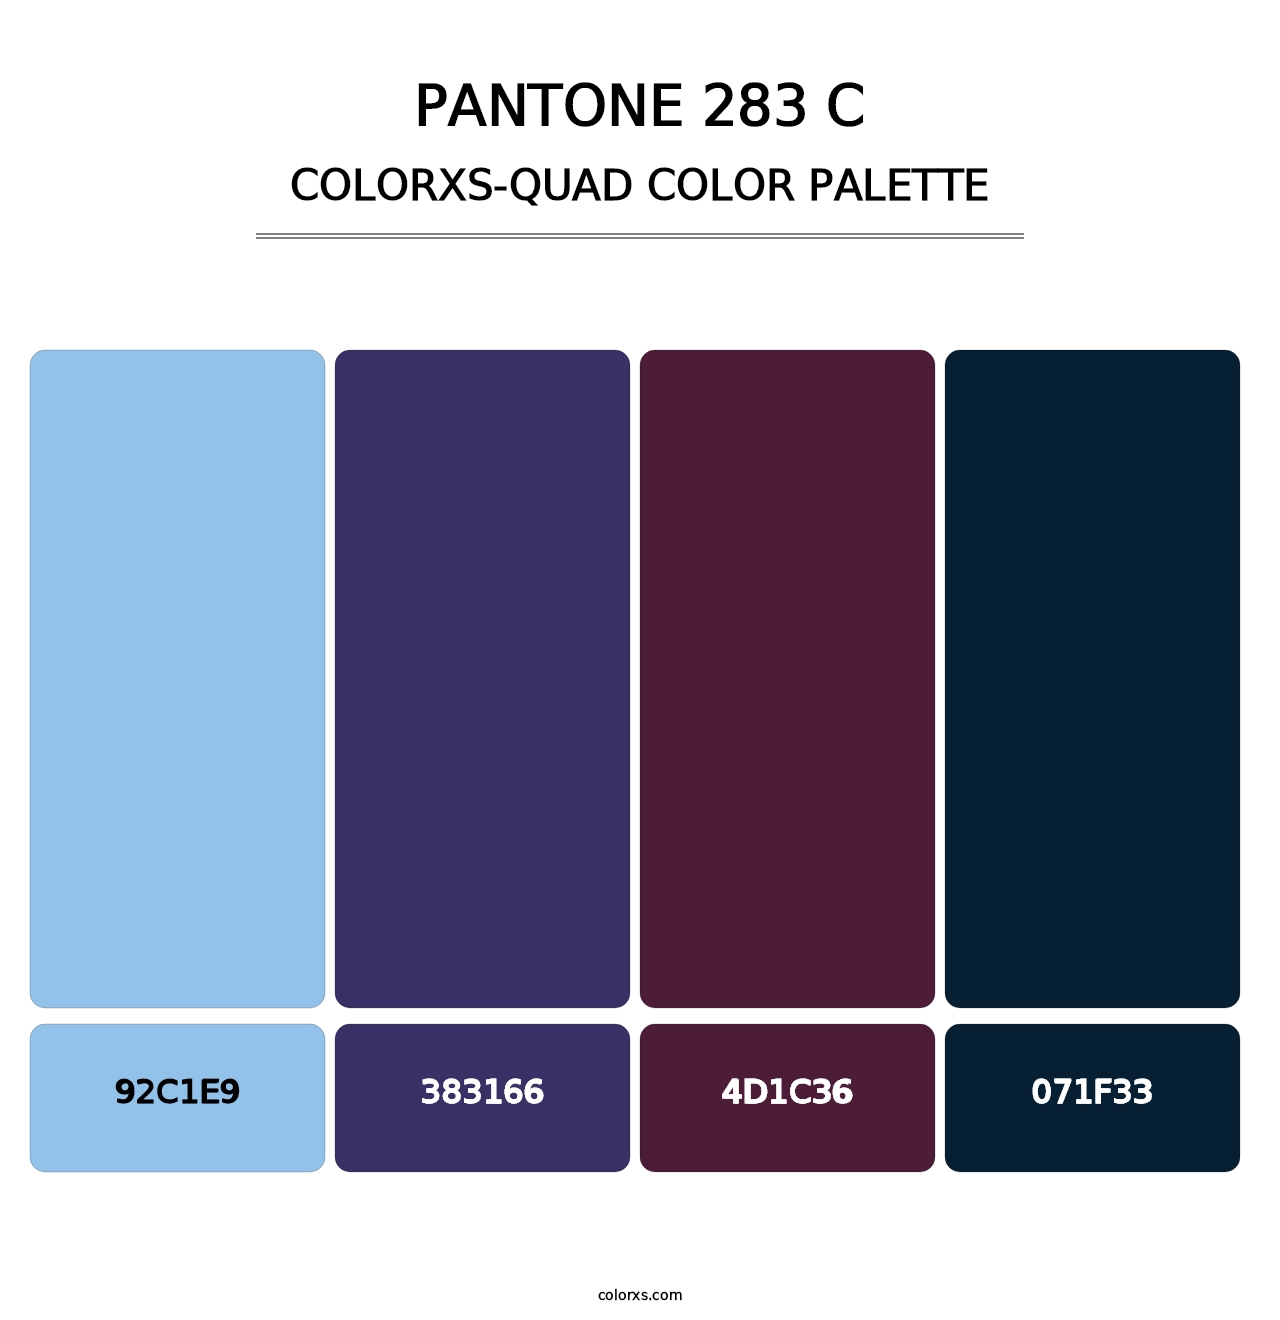 PANTONE 283 C - Colorxs Quad Palette